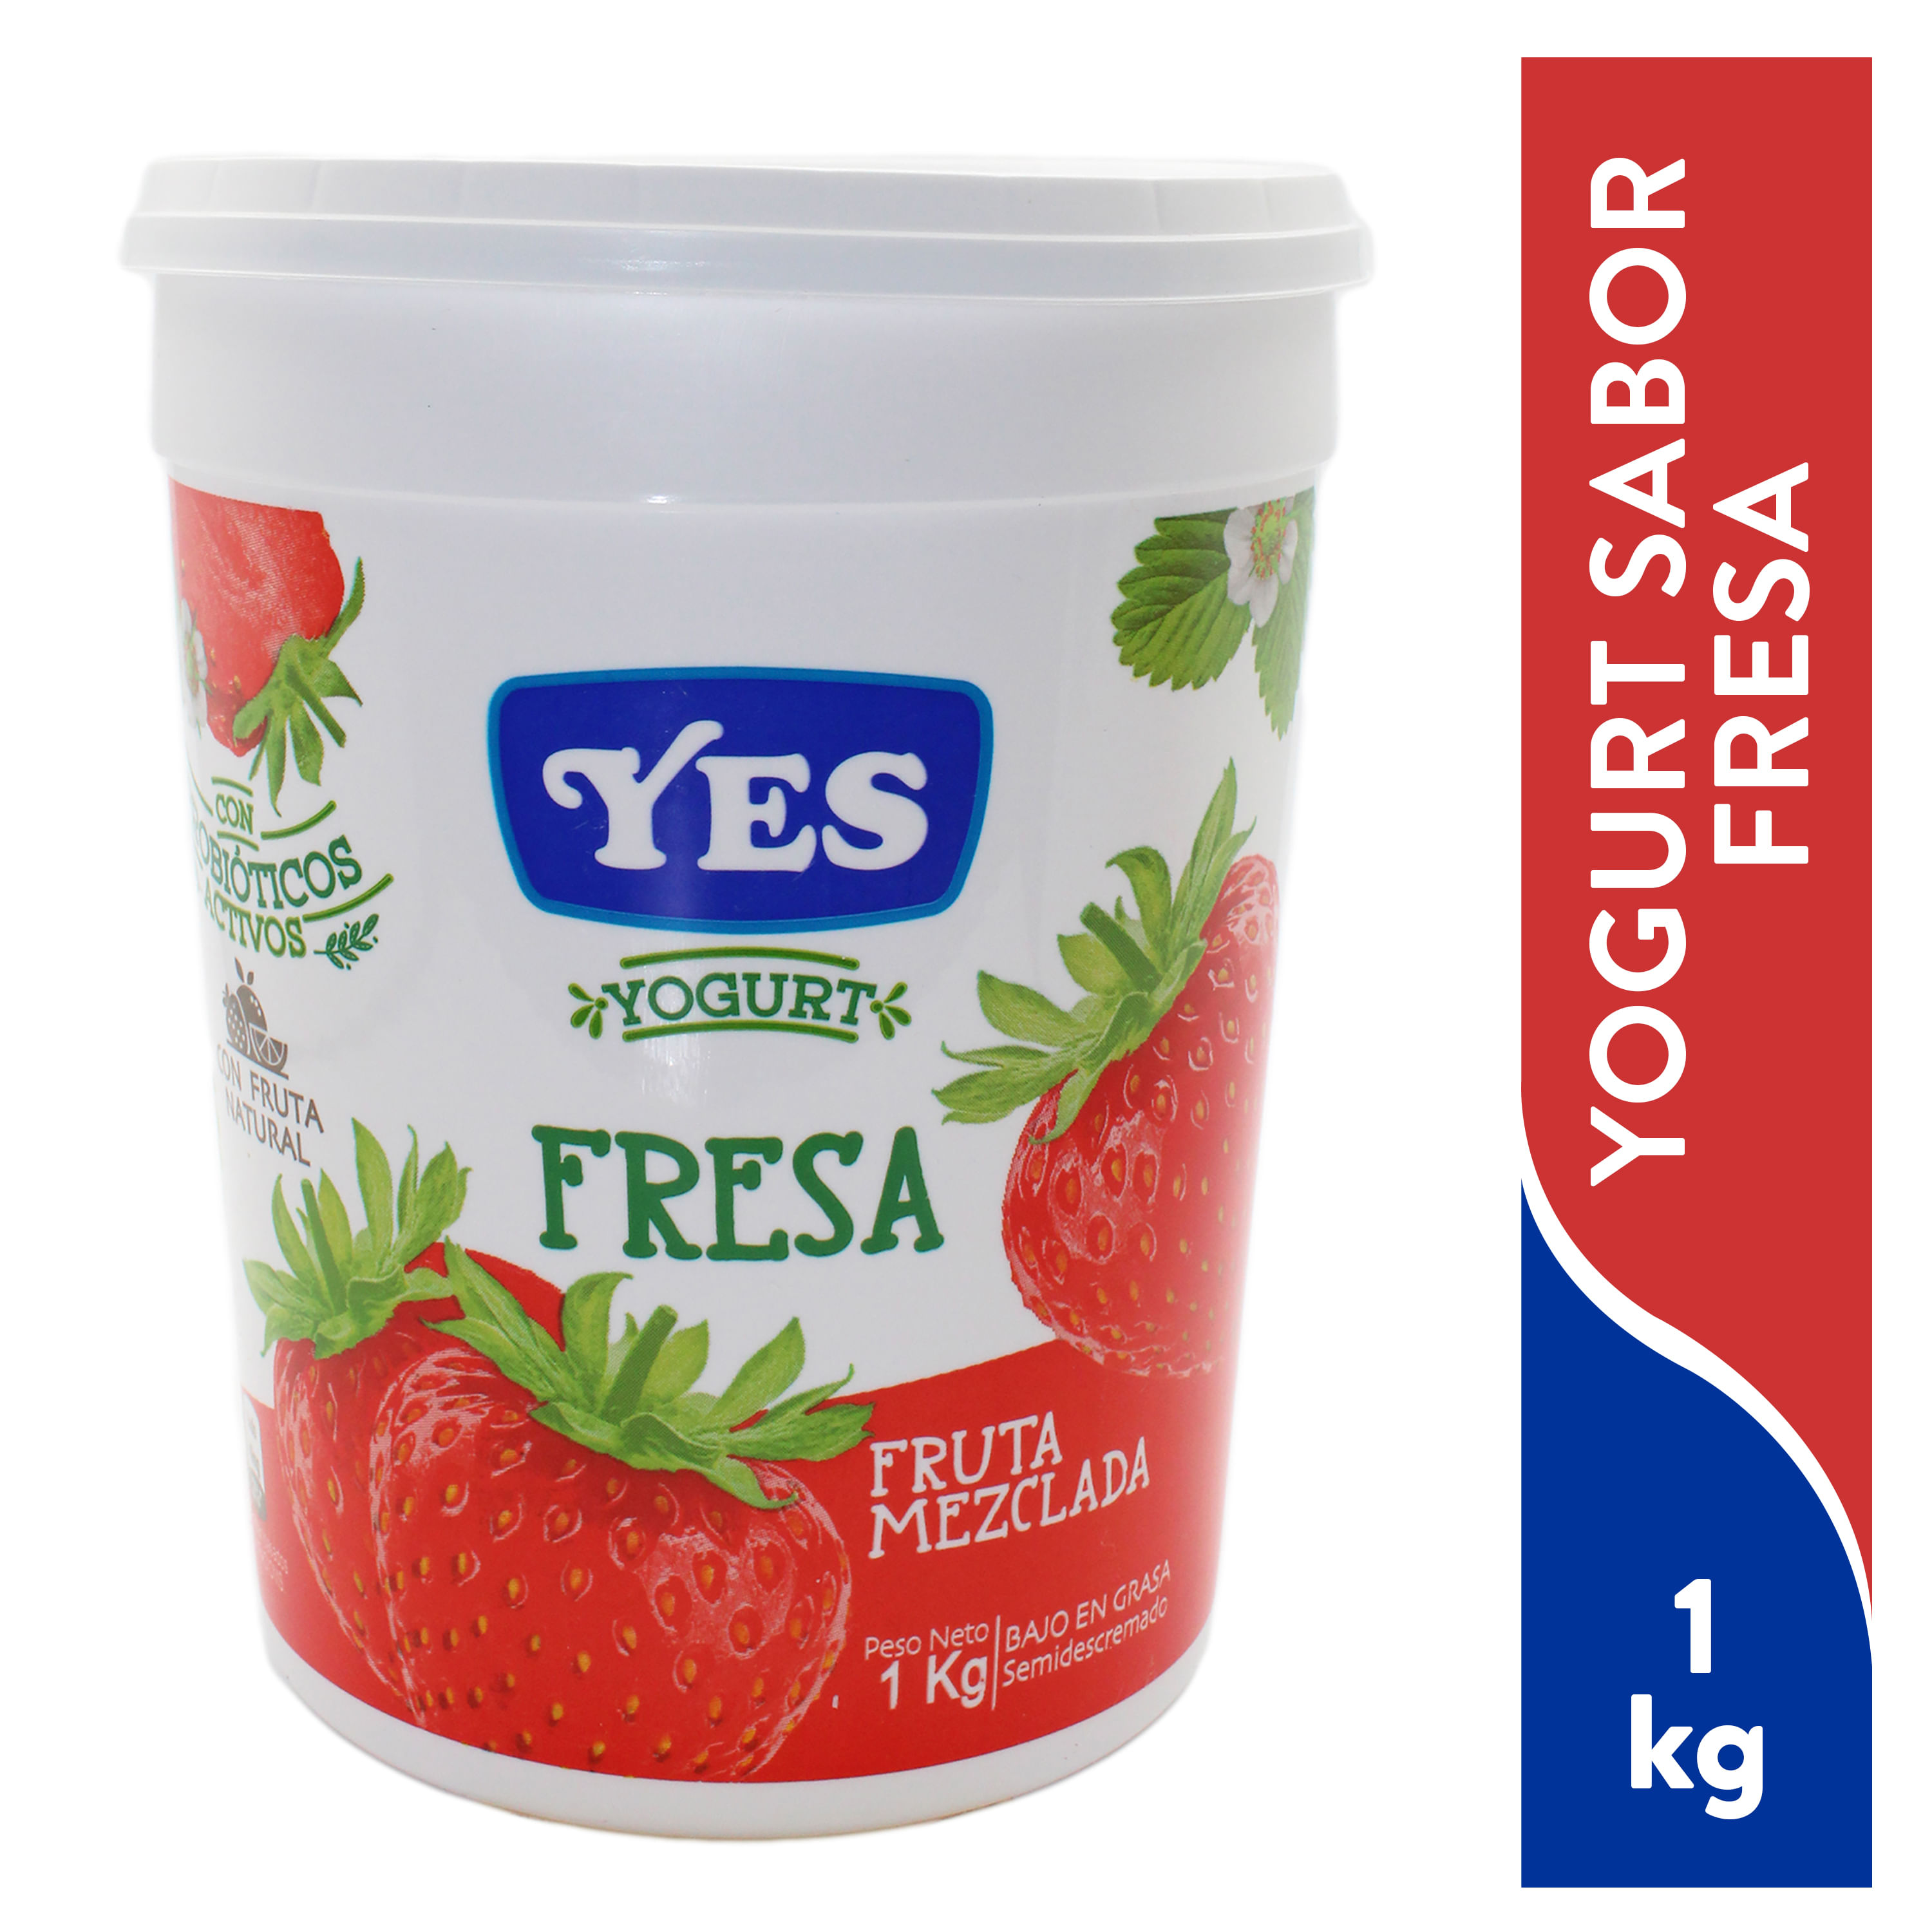 Yogurt-Yes-Fruta-Mezclada-Fresa-1000Ml-1-4797